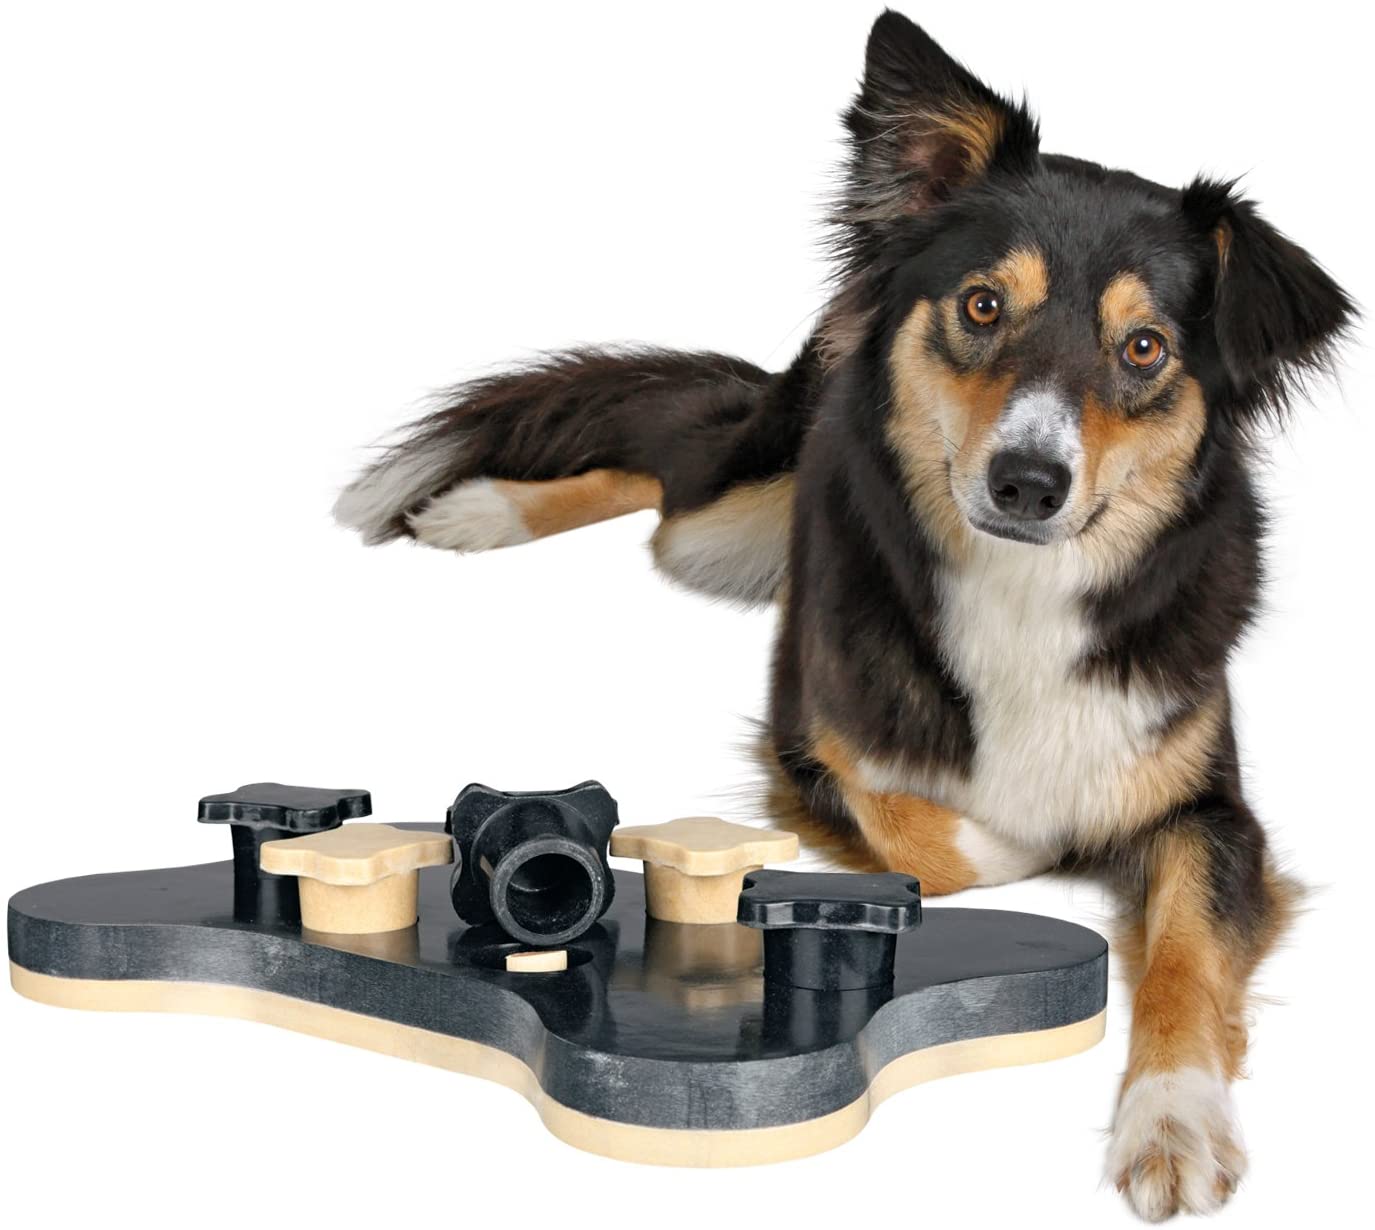  Trixie Dog Activity Juego Interactivo - Juguete para Perros Accesorios para Perros Dog Activity Game Bone 31x20 cm Nivel 1 y 2 